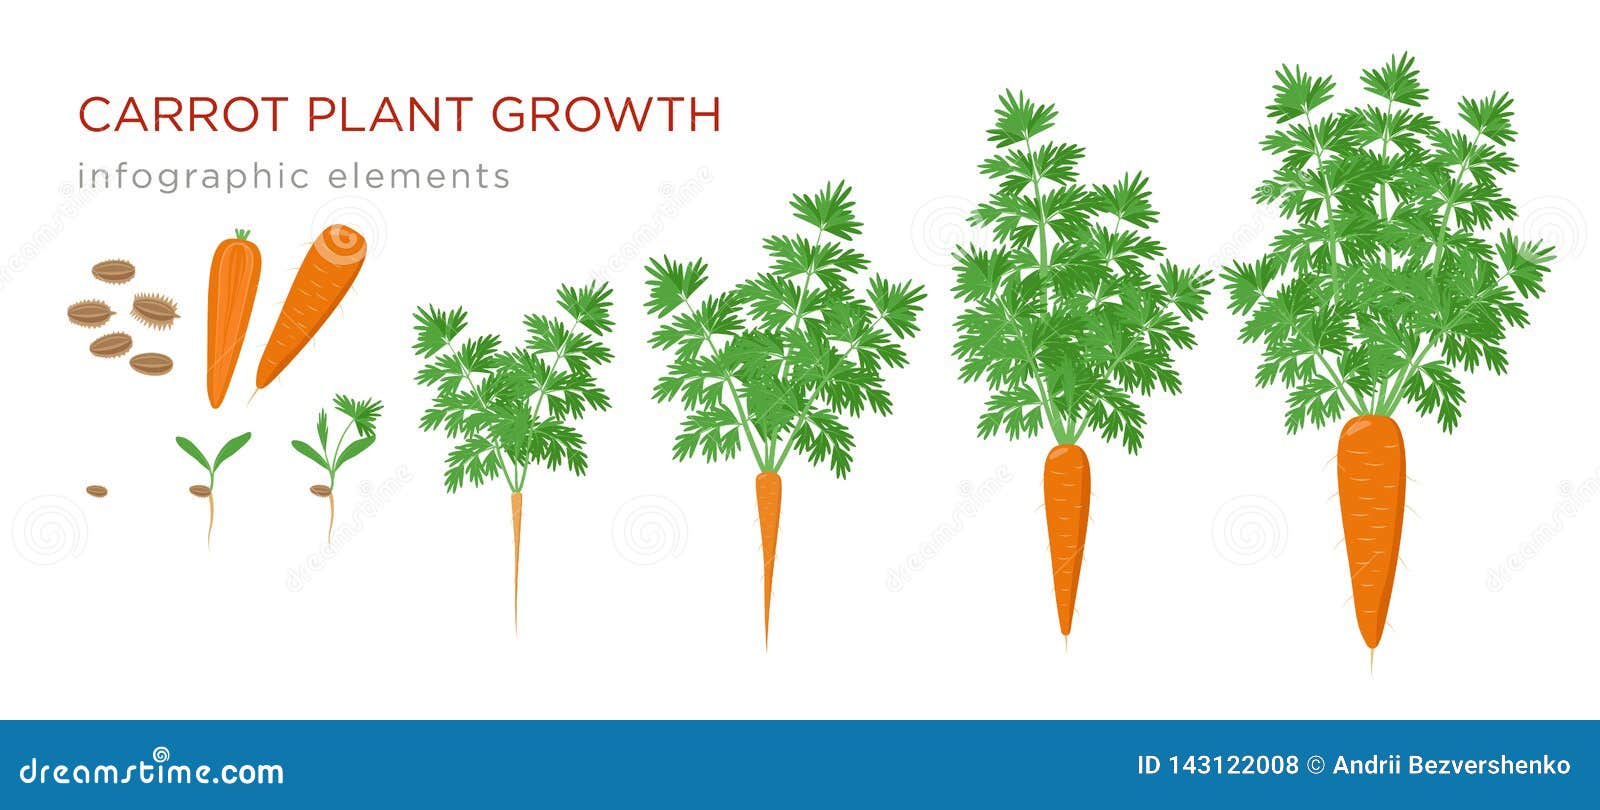 Жизненный цикл овощных растений по маркову. Цикл развития моркови для детей. Стадии роста моркови. Этапы роста моркови для дошкольников. Фазы развития моркови.